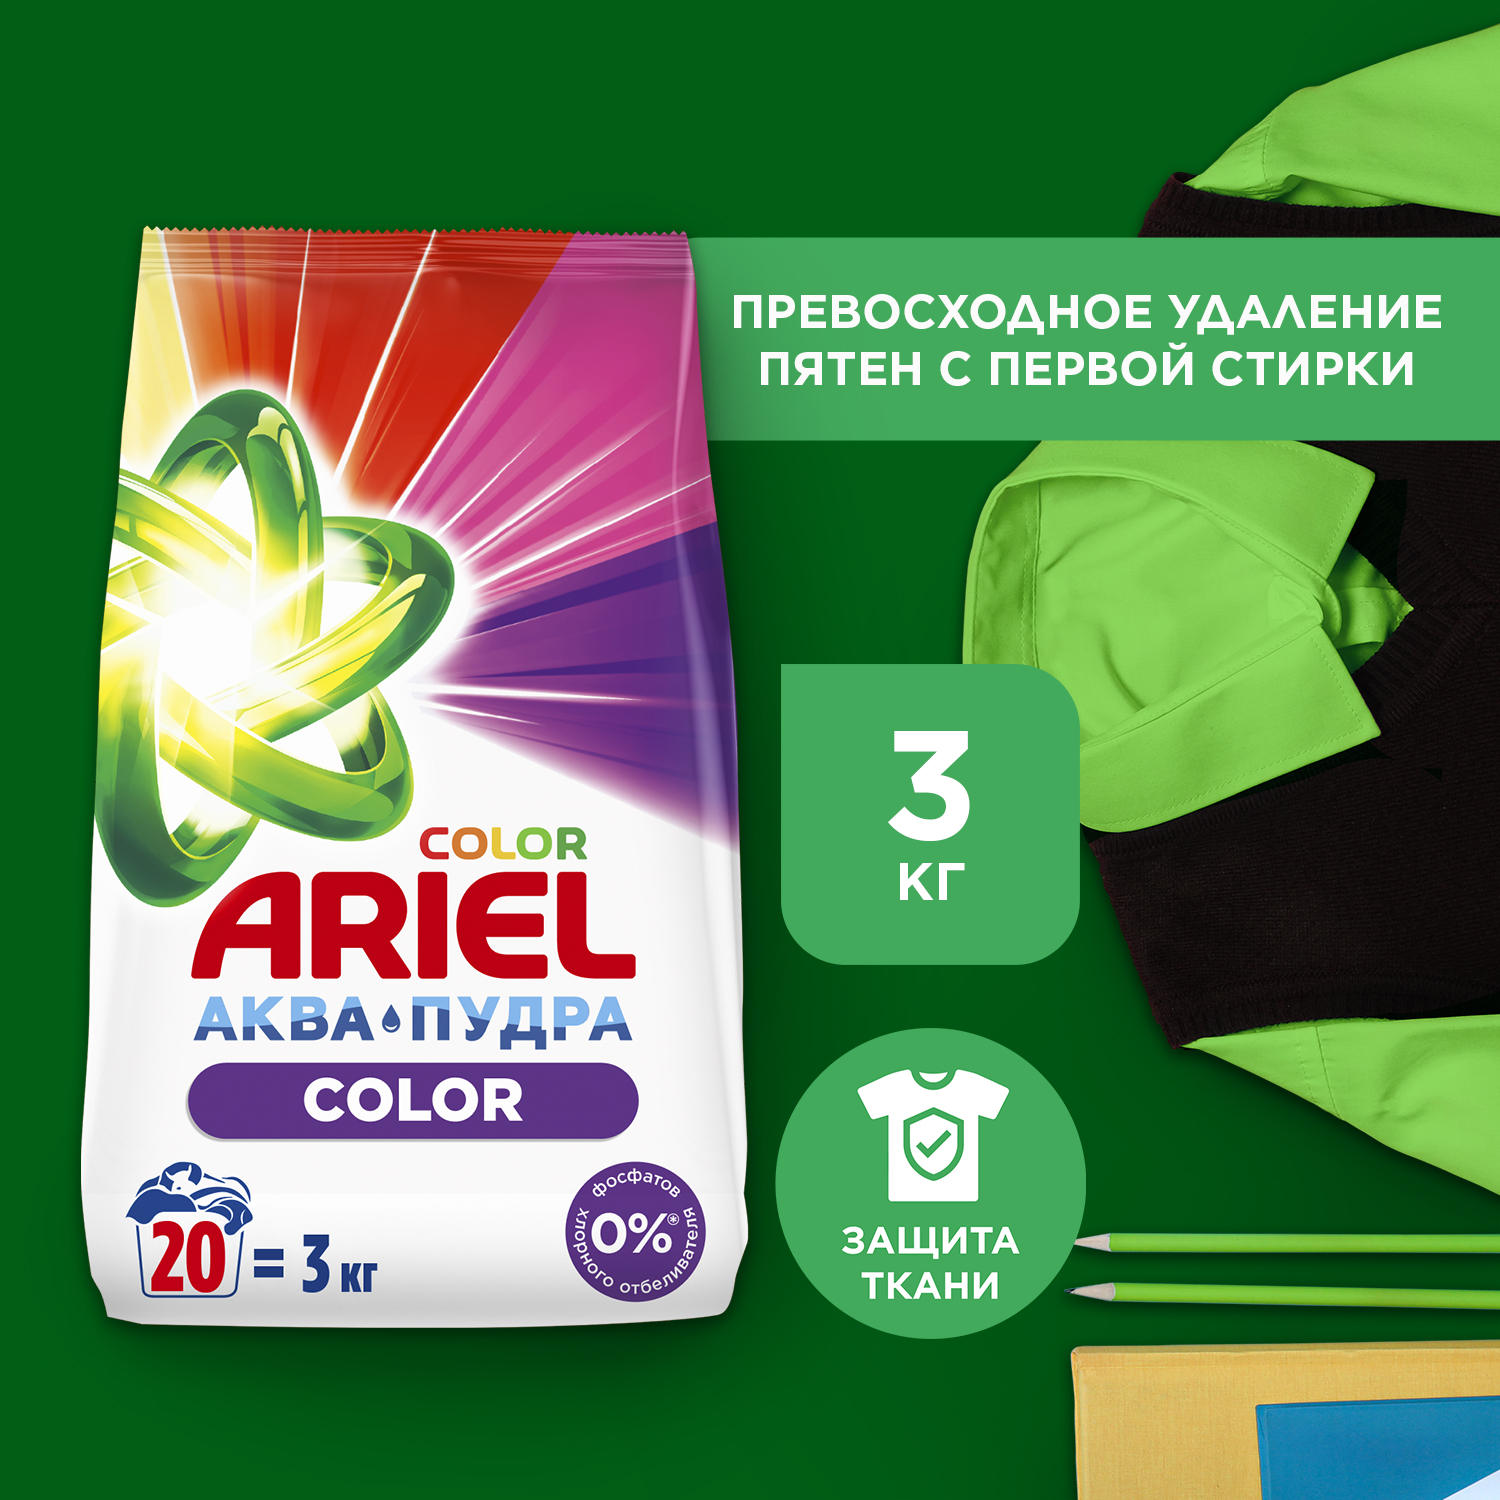 Порошок стиральный Ariel Color автомат 3 кг - купить в Grand House, цена на Мегамаркет